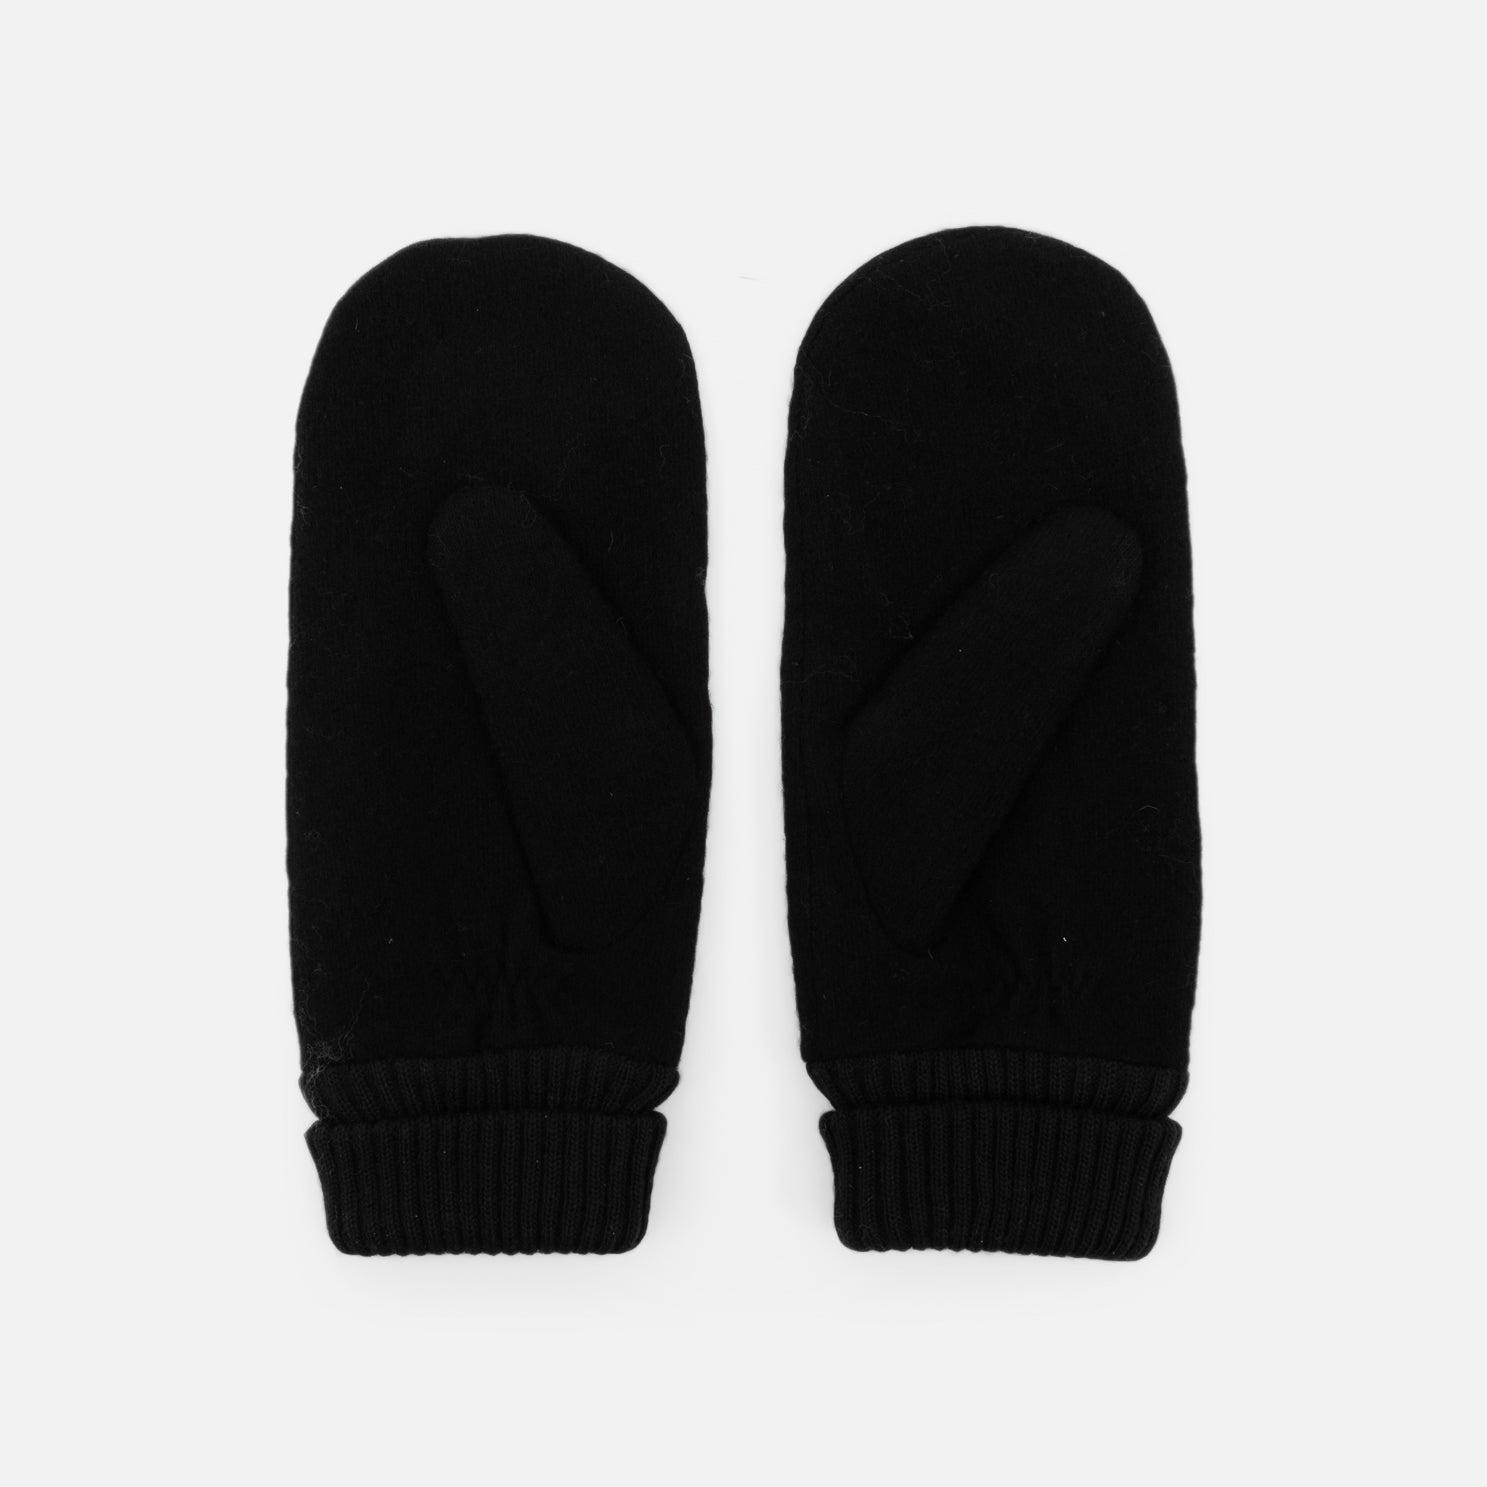 Mitaines noires avec tricot au poignet